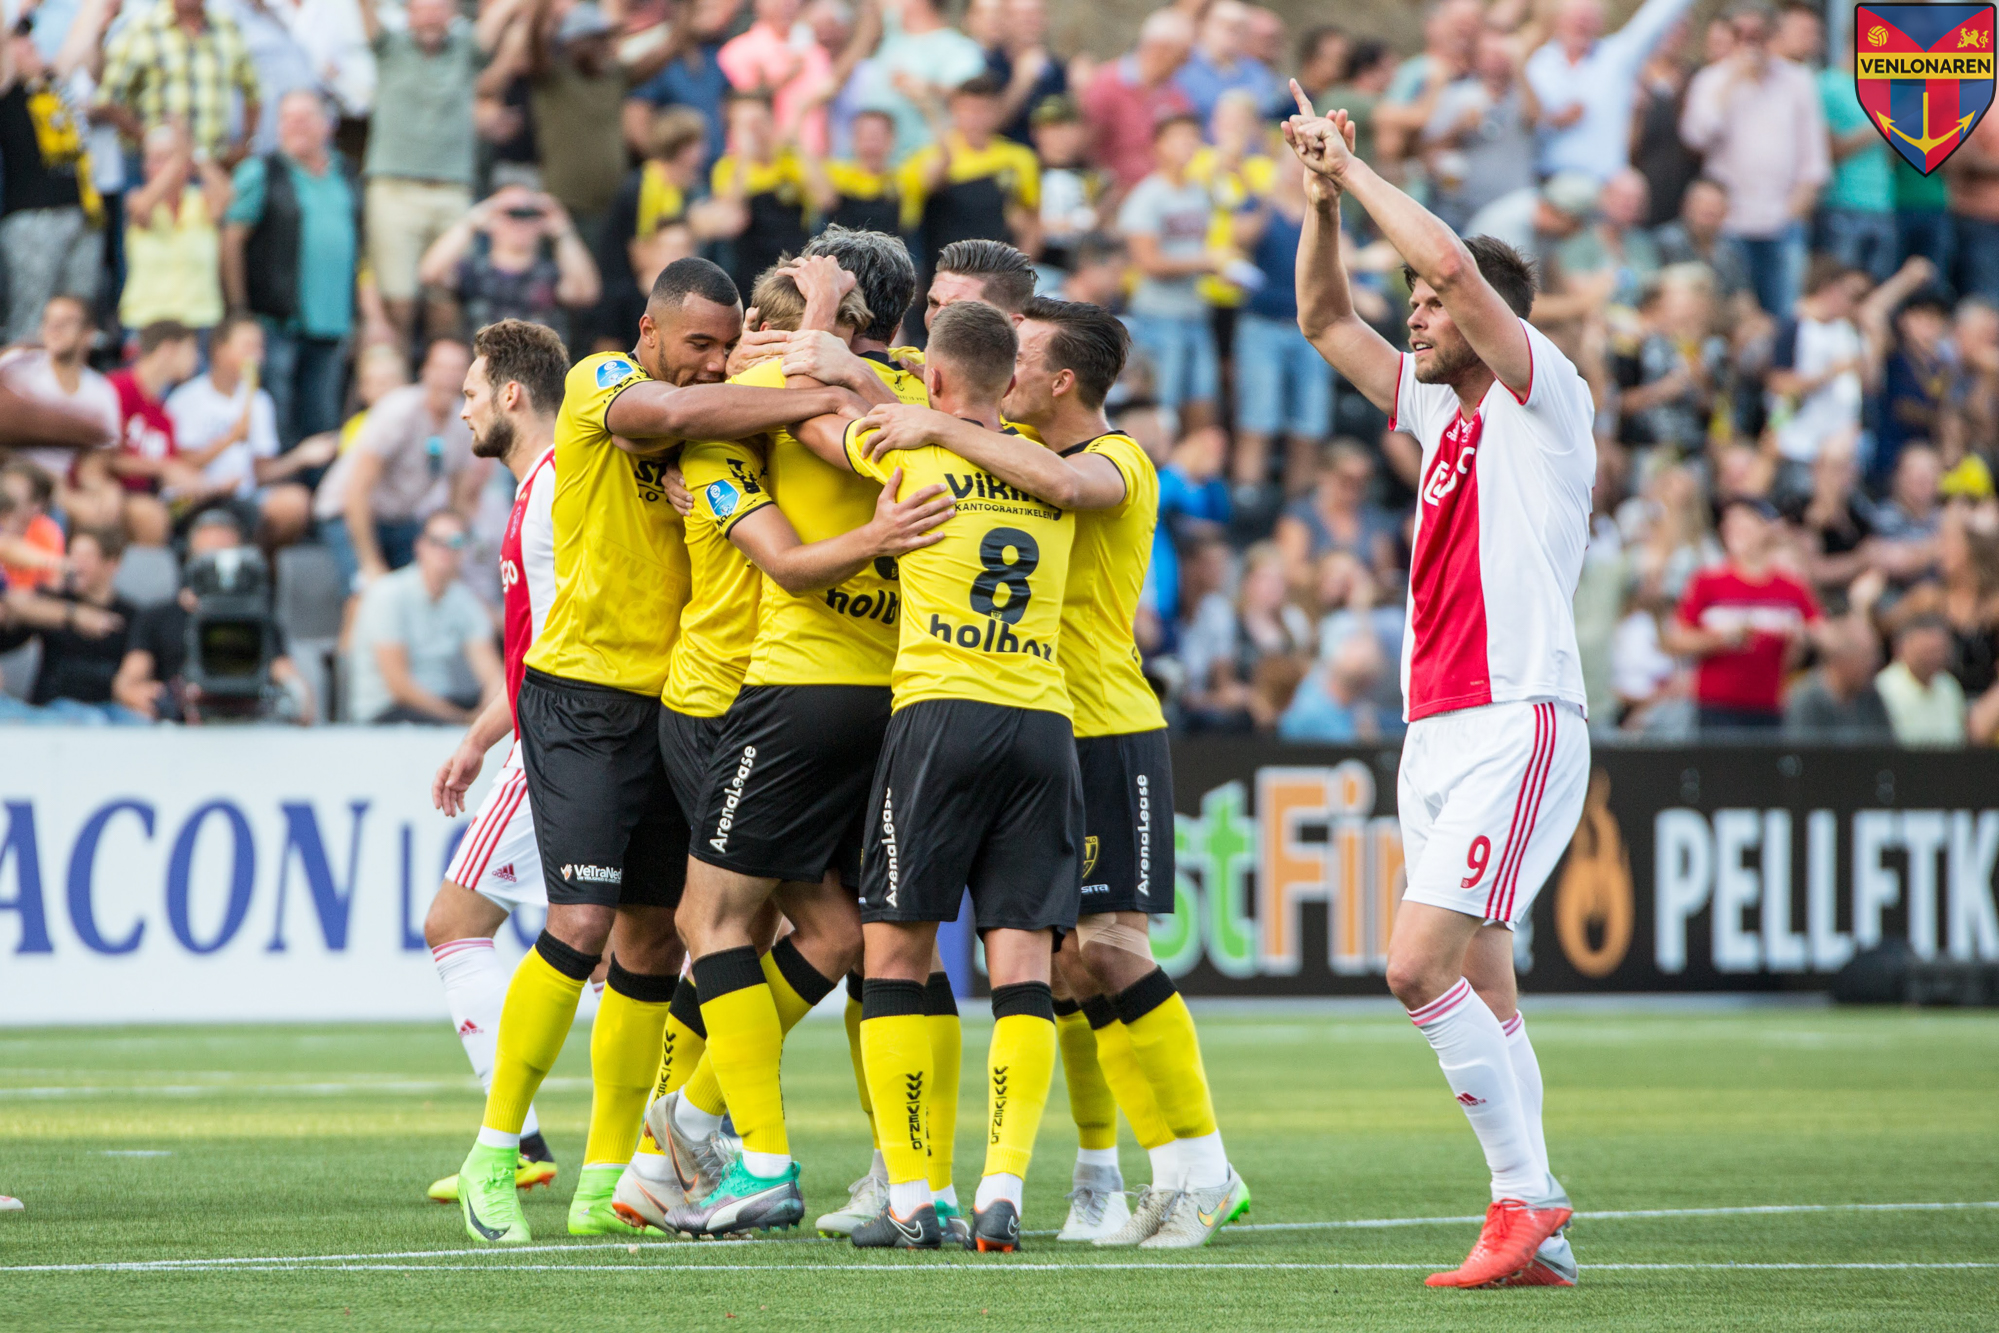 Ajax vs Venlo – Soi kèo nhà cái bóng đá 19h30 ngày 13/05/2021 – VĐQG Hà Lan